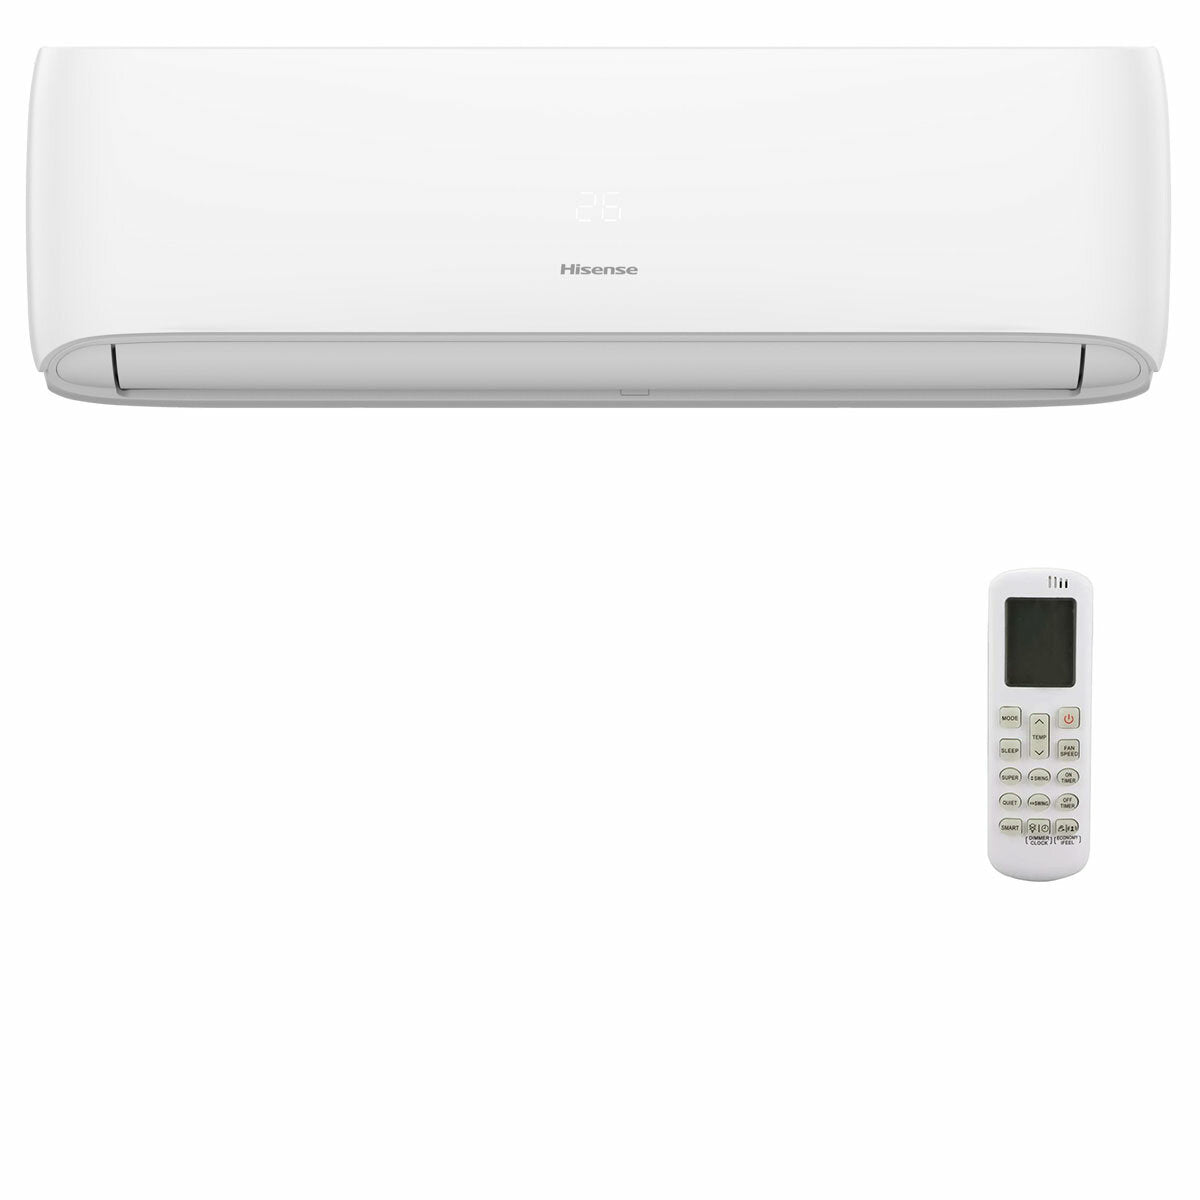 Hisense Hi-Comfort penta split air conditioner 9000+9000+9000+9000+9000 BTU wifi inverter outdoor unit 12.5 kW